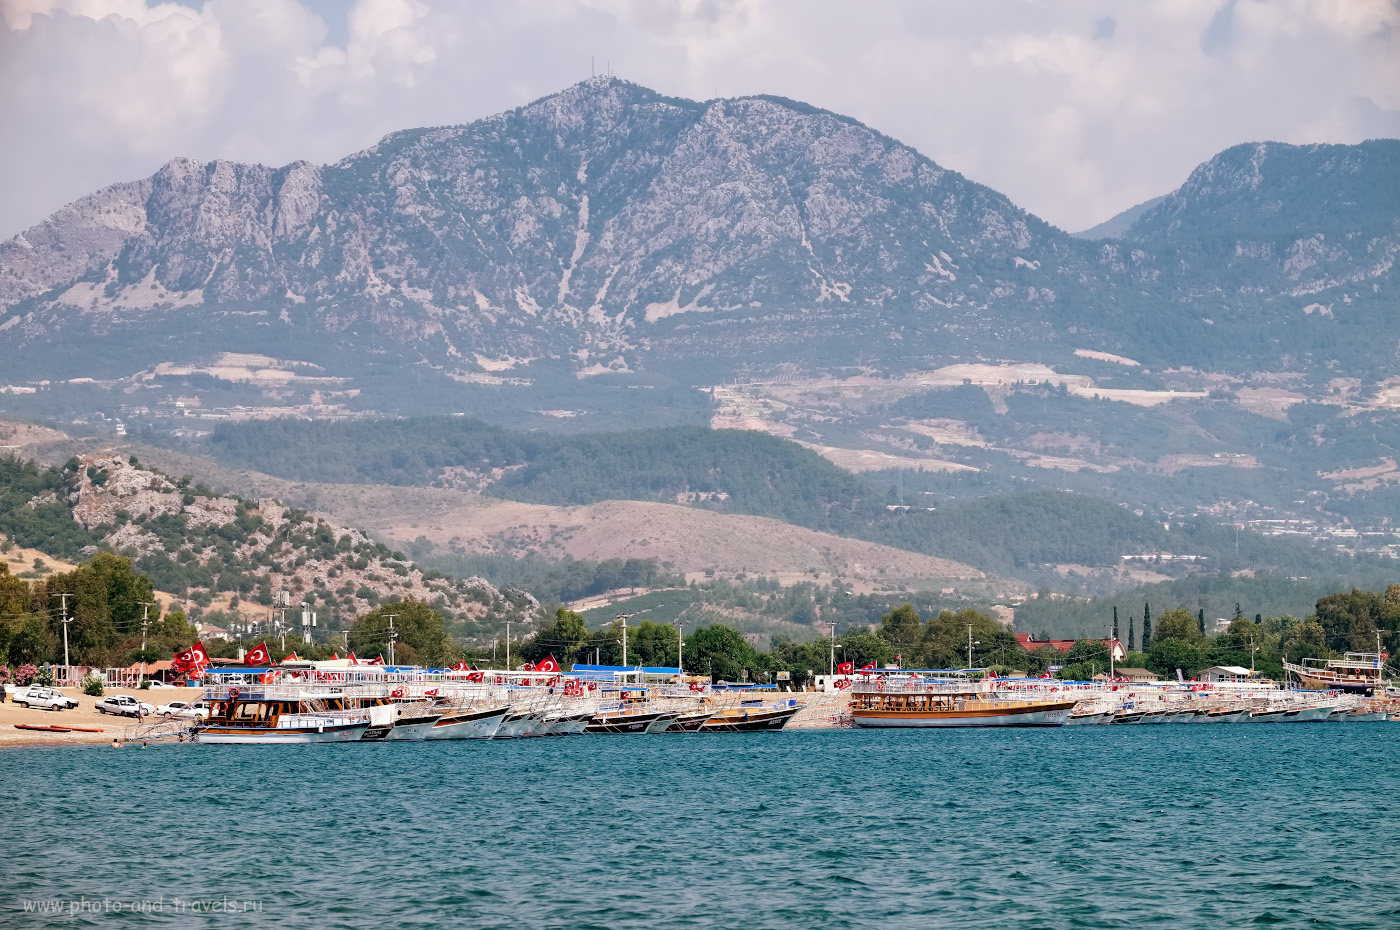 20. Кораблики для круизов на остров Сулуада. На заднем плане – Тахталы (Tahtalı Dağı, 2365 метров над уровнем моря), высочайшая гора Кемера . 1/320, 8.0, 200, +1.0, 121.